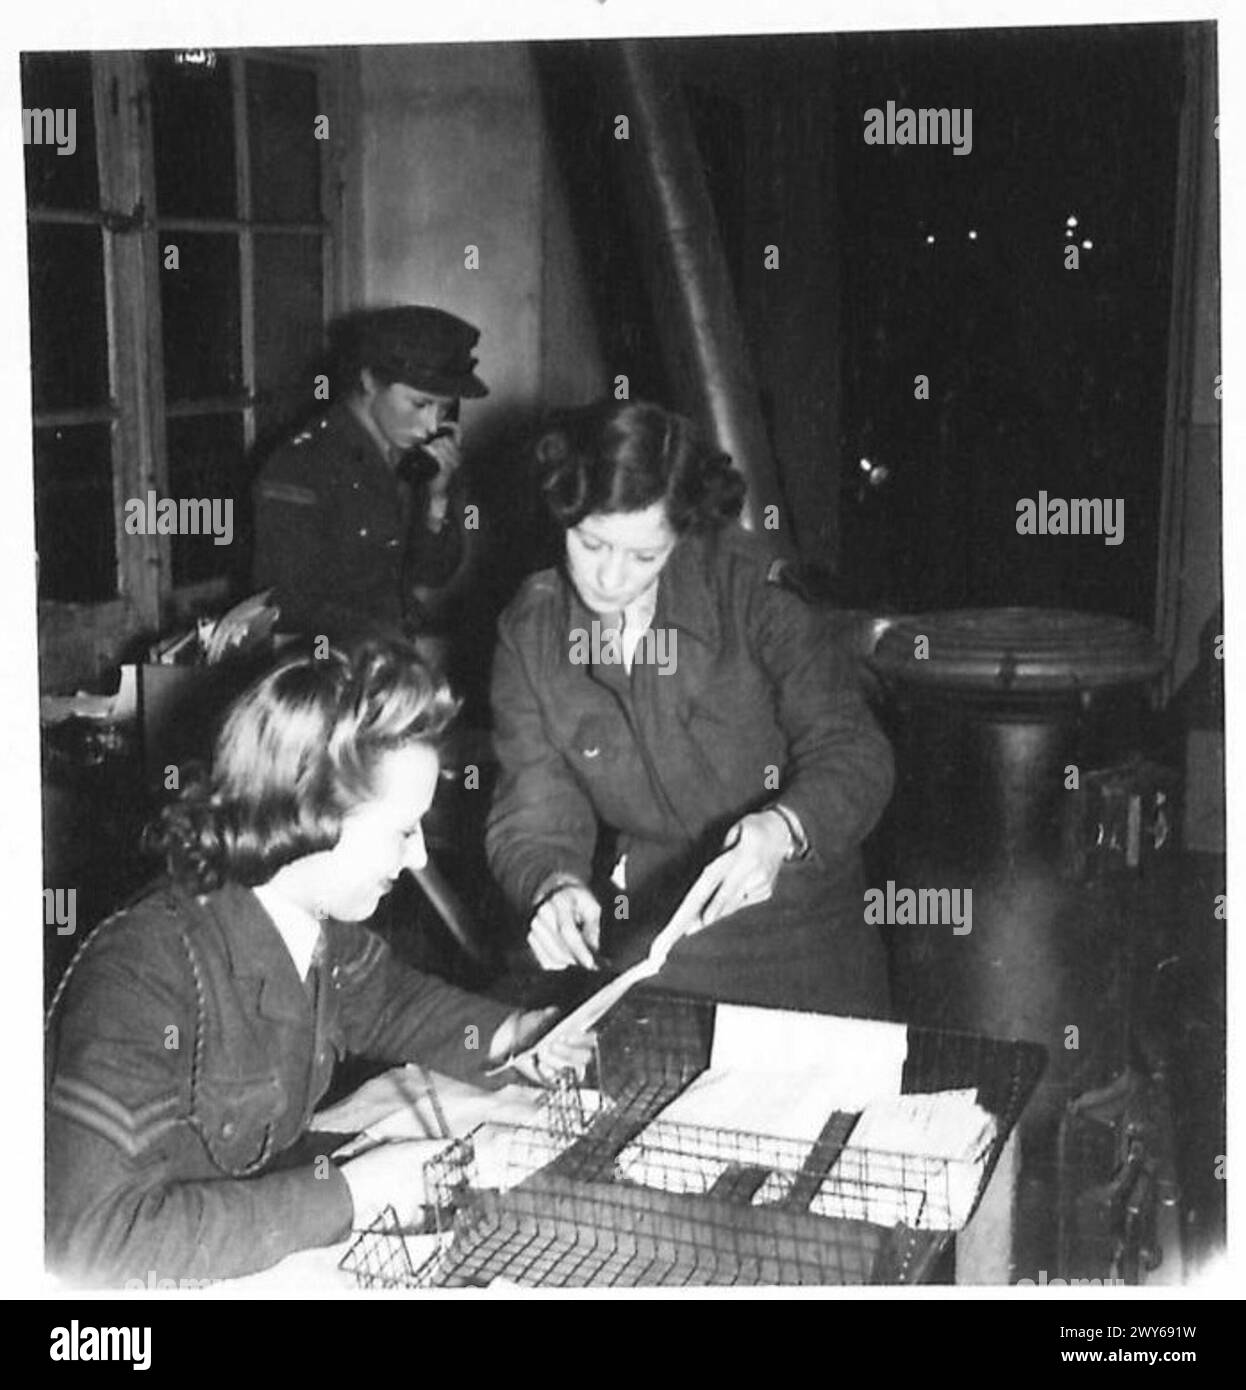 RAGAZZE DI SERVIZIO dello S.H.A.E.F. - al banco di circolazione nell'ufficio telestampatore. [A sinistra] Cpl. E. McNeil di Wallasey, Cheshire. È in A.T.S. dal novembre 1939. Sta ricevendo un messaggio di telestampa da Pte. Beatrice Hayward di Ardwick, Manchester. , British Army, 21st Army Group Foto Stock